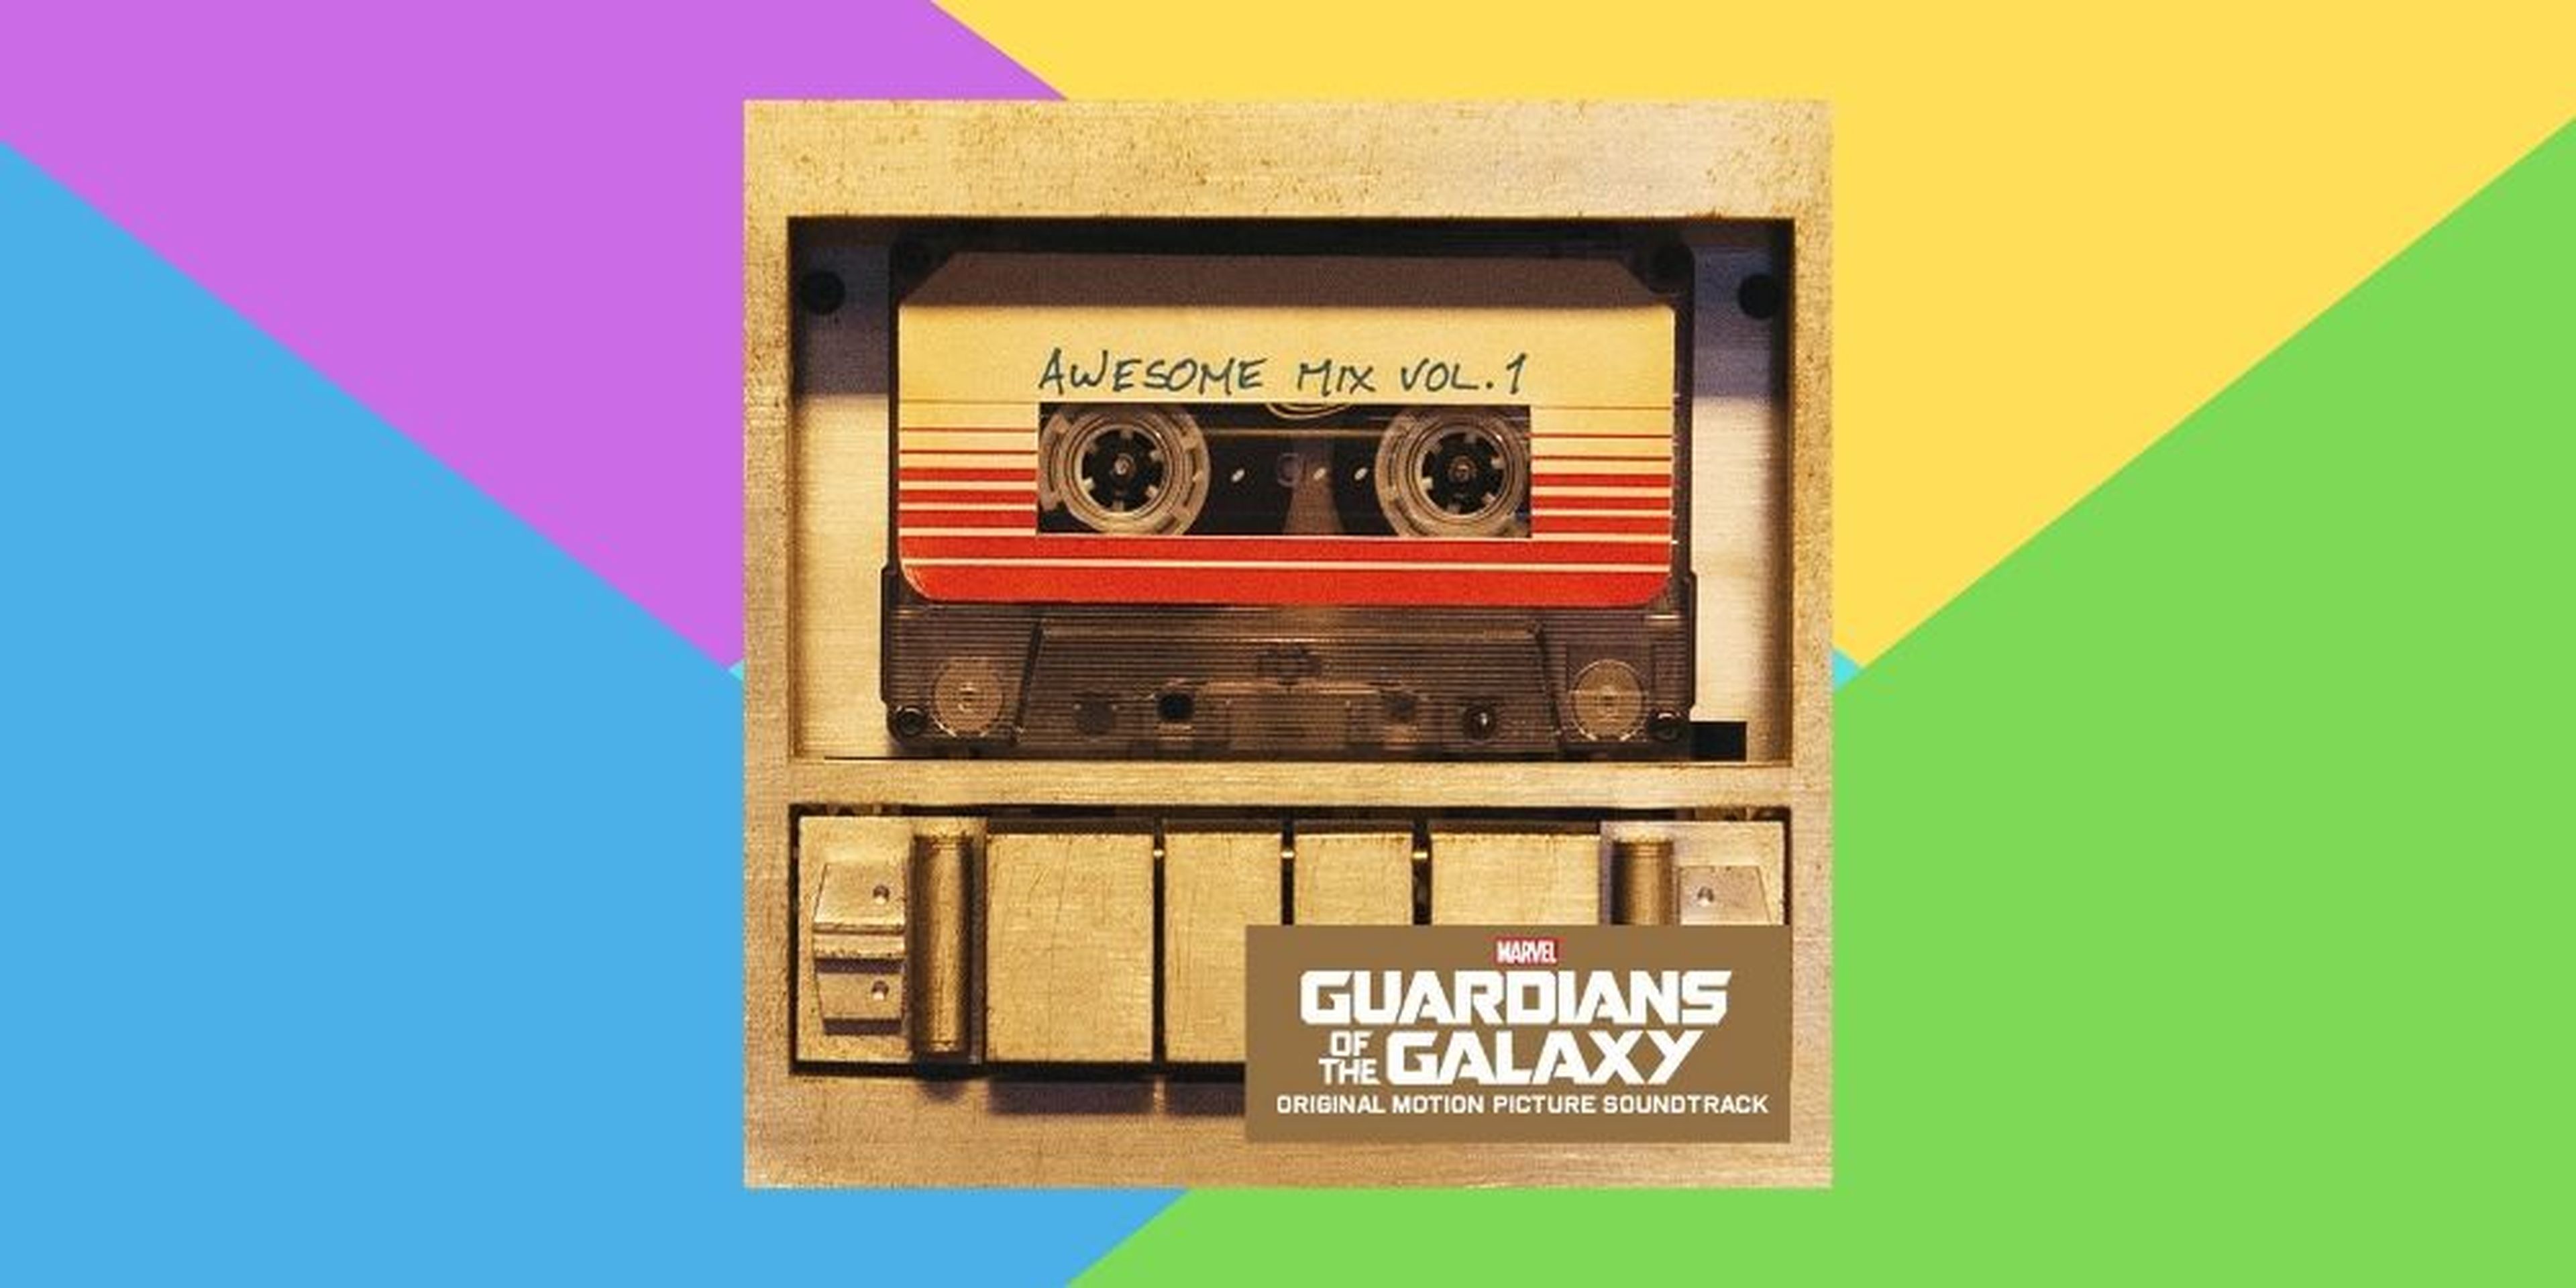 Banda sonora de Guardianes de la Galaxia, Awesome Mix Volumen 1 en vinilo